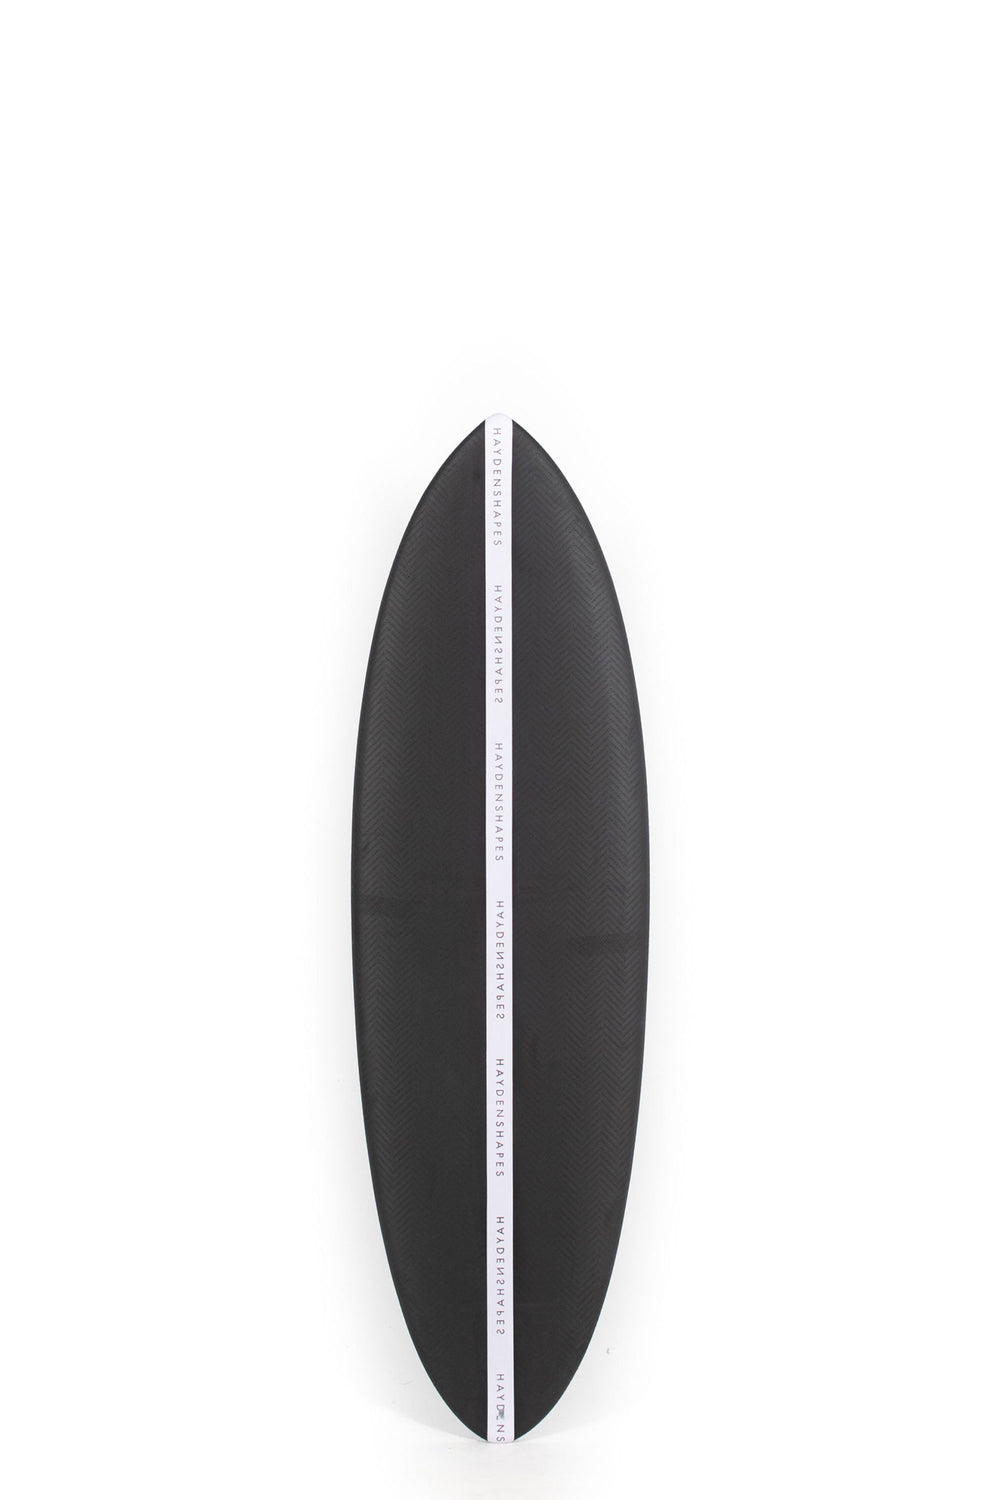 Pukas Surf Shop - HaydenShapes Surfboard - HYPTO KRYPTO SOFT - 6'0